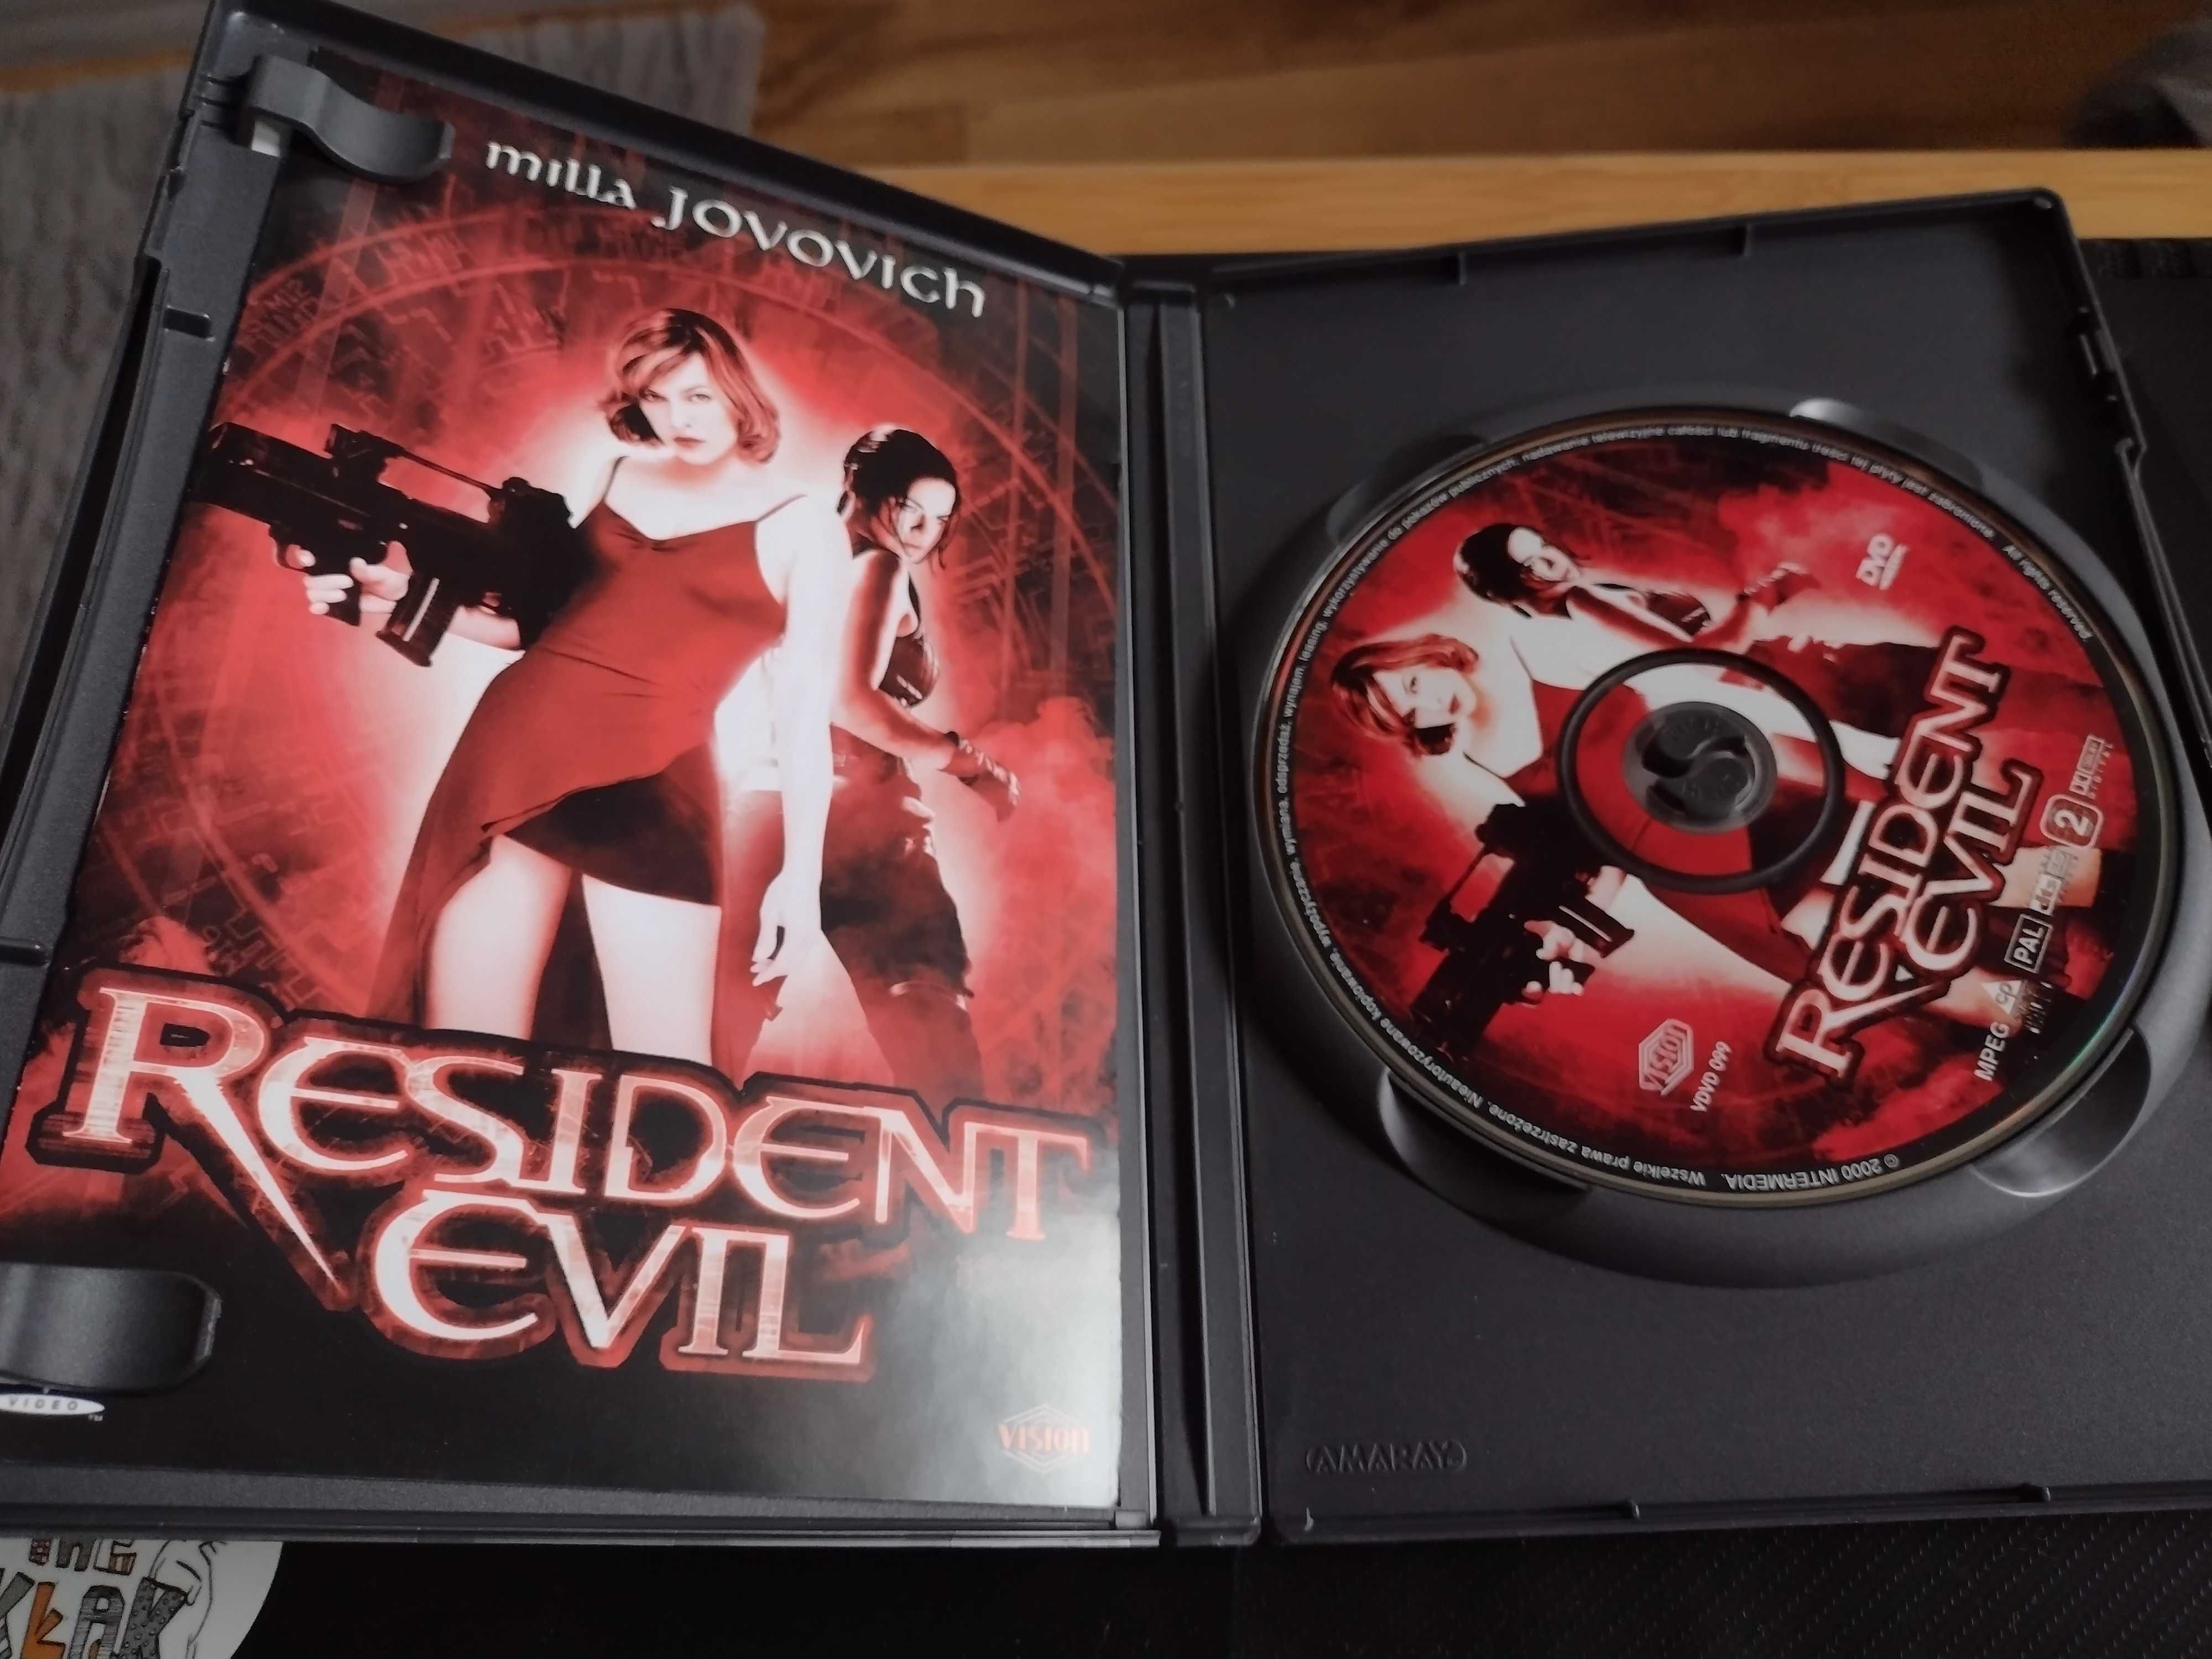 Resident Evil DVD film